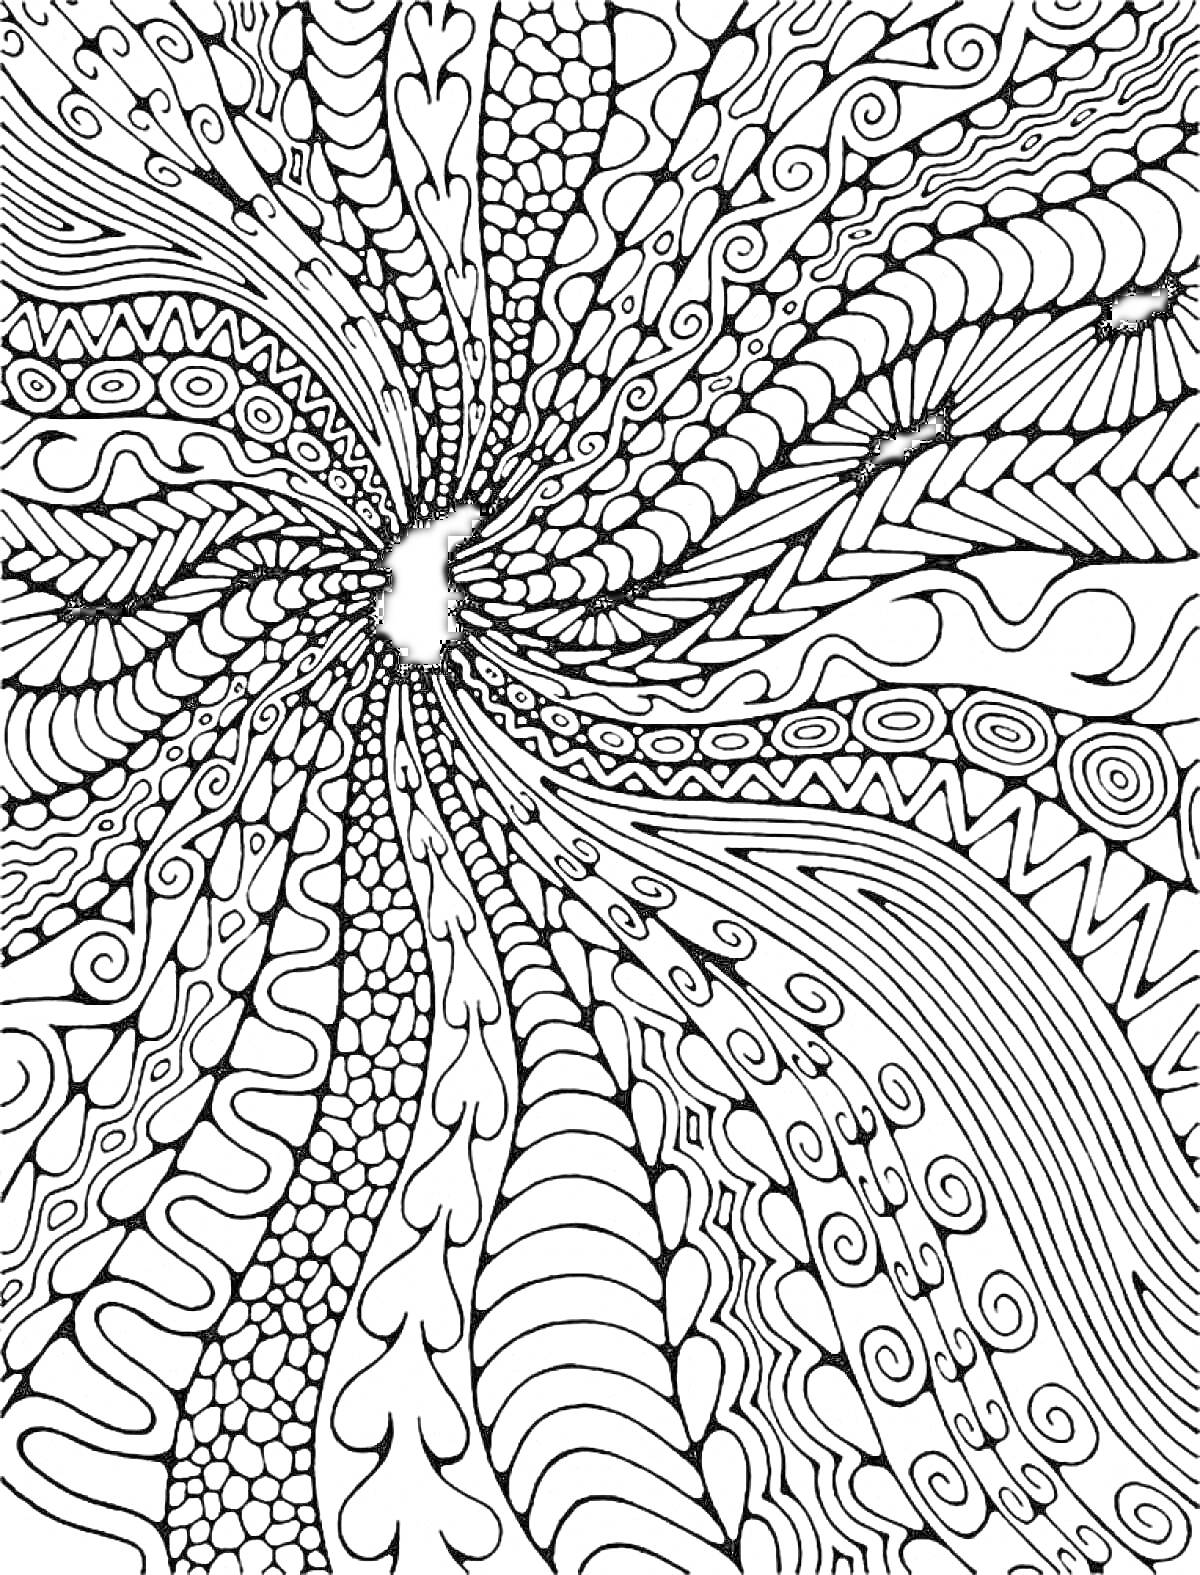 РаскраскаАбстрактное узорное расслабление: волны, листья, завитки, точки, линии и зигзаги